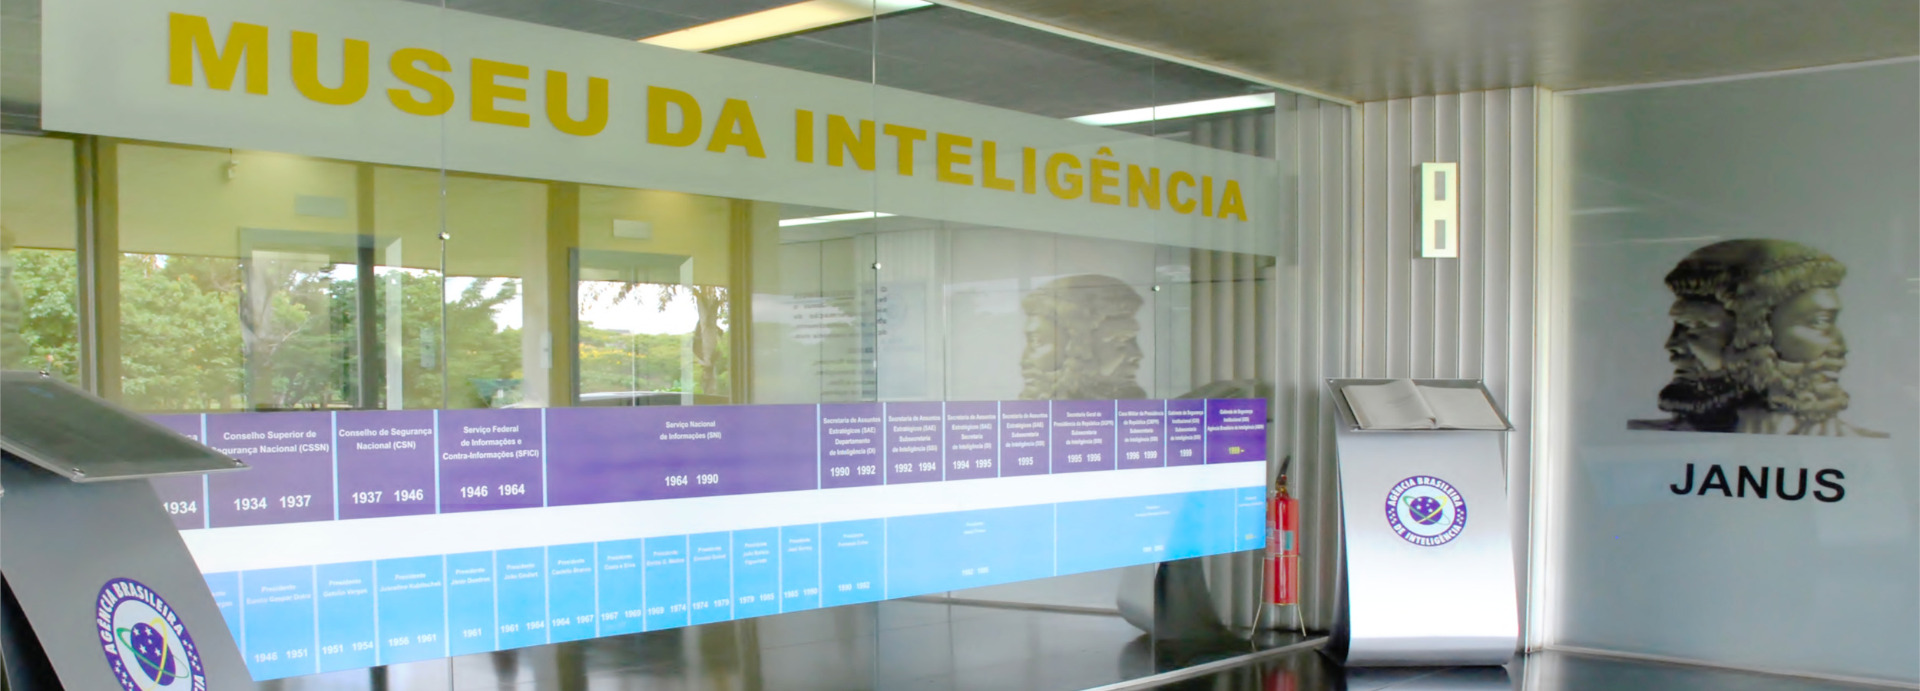 Hall de entrada do Museu da Inteligência, na sede da ABIN, em Brasília. Resolução 2500 por 900 pixels.